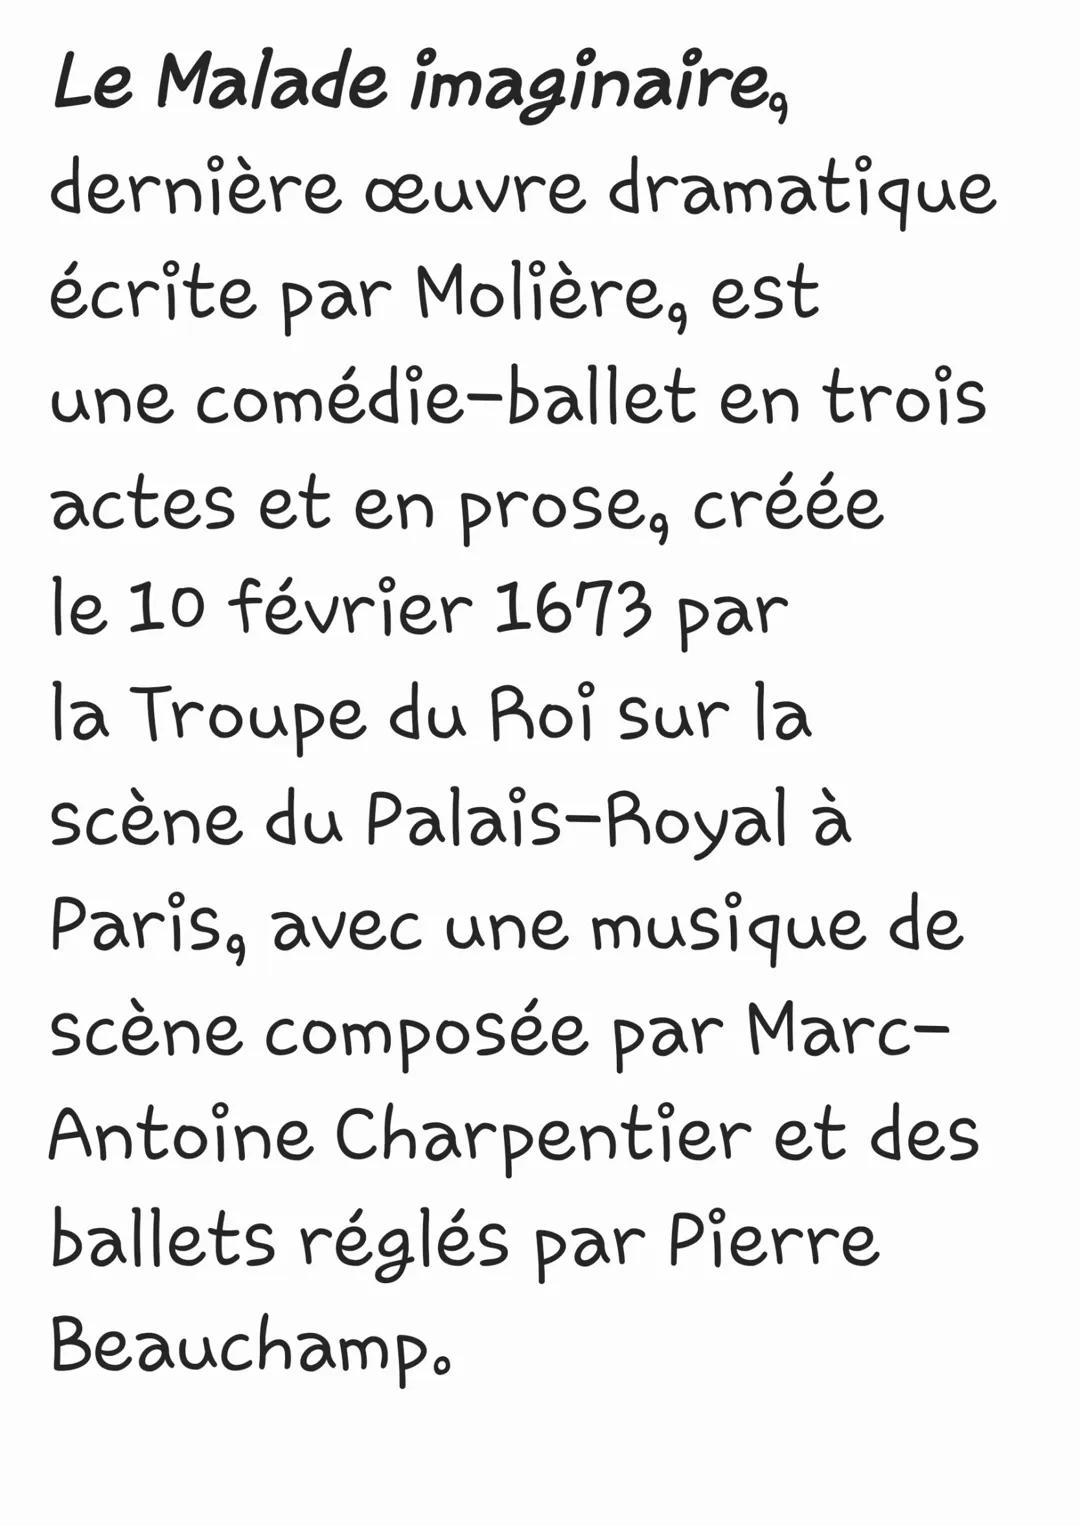 Auteur:Molière
Genre:Comédie ballet
Nb.d'actes:3
Musique de scène: Marc-
Antoine Charpentier
Date de création en
français:10 février 1673
Li